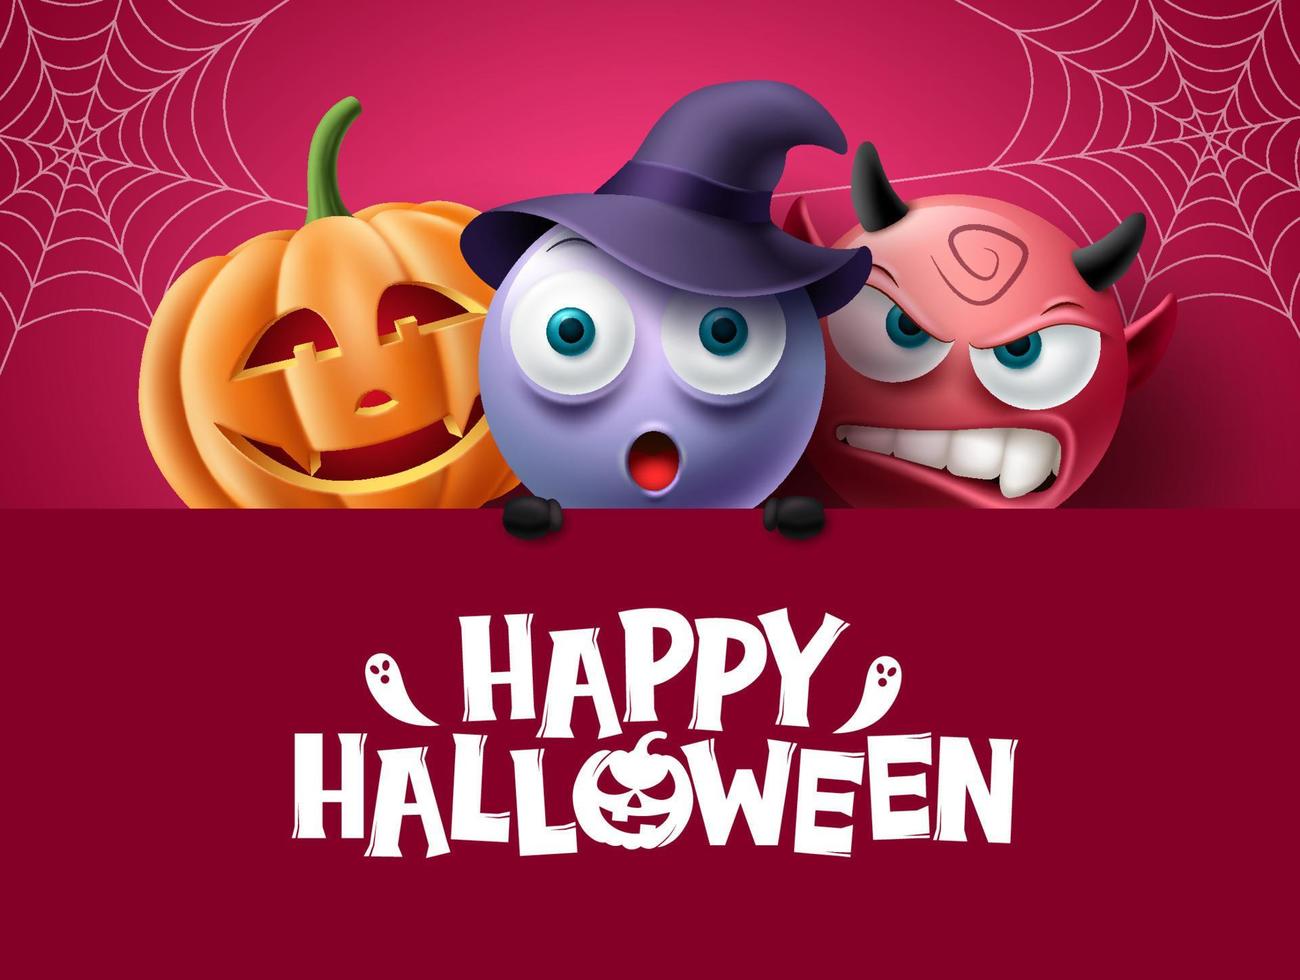 halloween tecken bakgrundsdesign. glad halloween-text i rött utrymme med läskiga, läskiga och läskiga karaktärer för skräckfestdekoration. vektor illustration.